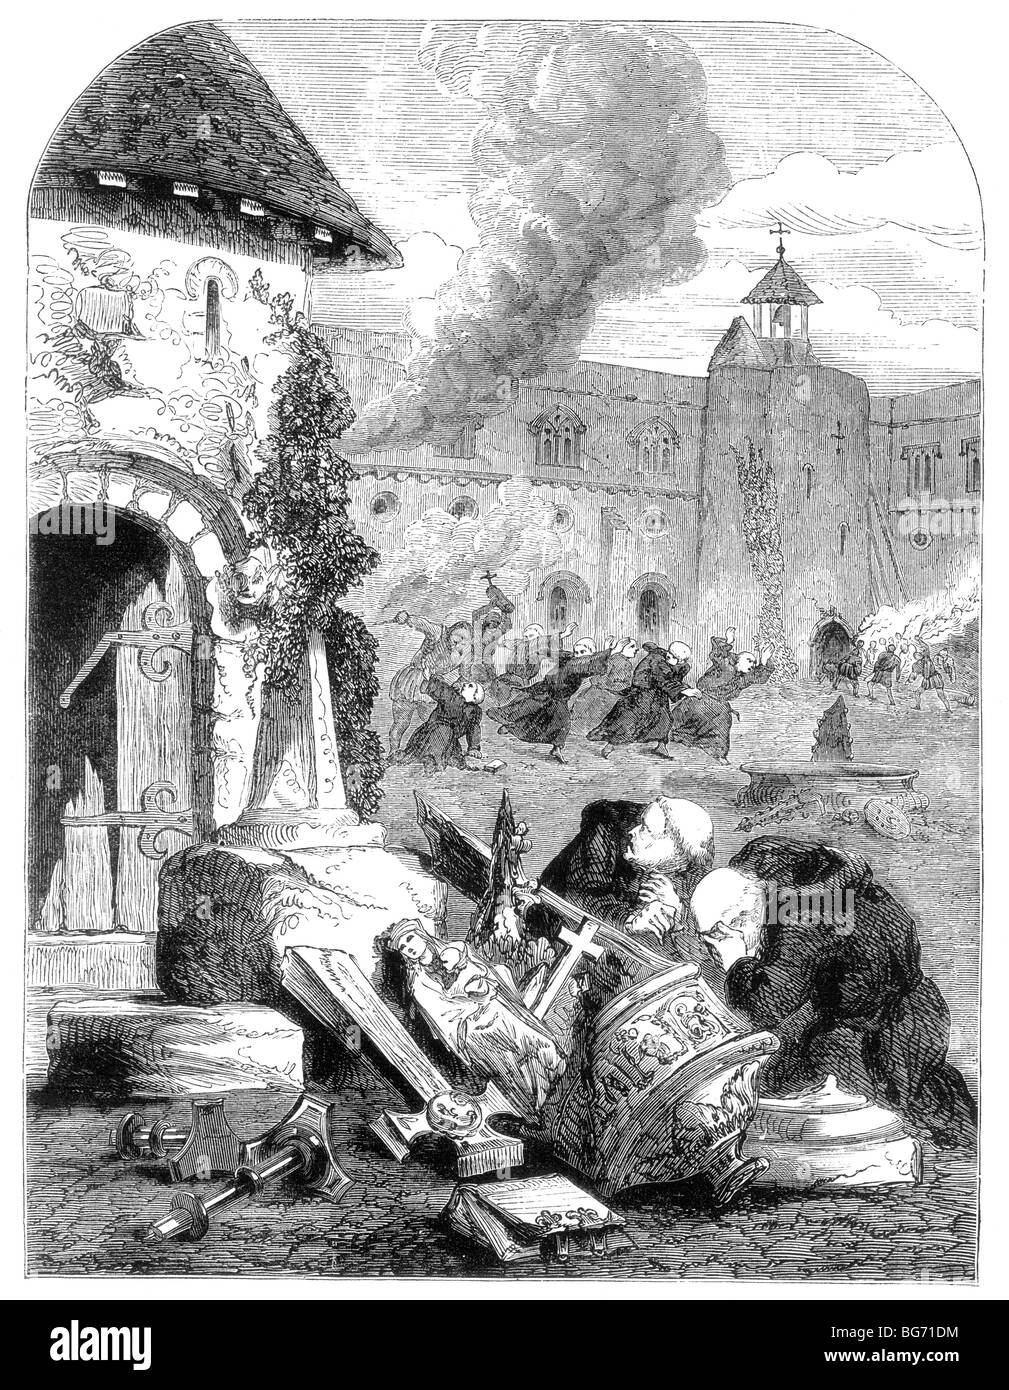 Illustration de la destruction de la Chartreuse par des émeutiers, Perth, Ecosse 11 Mai 1559 Banque D'Images